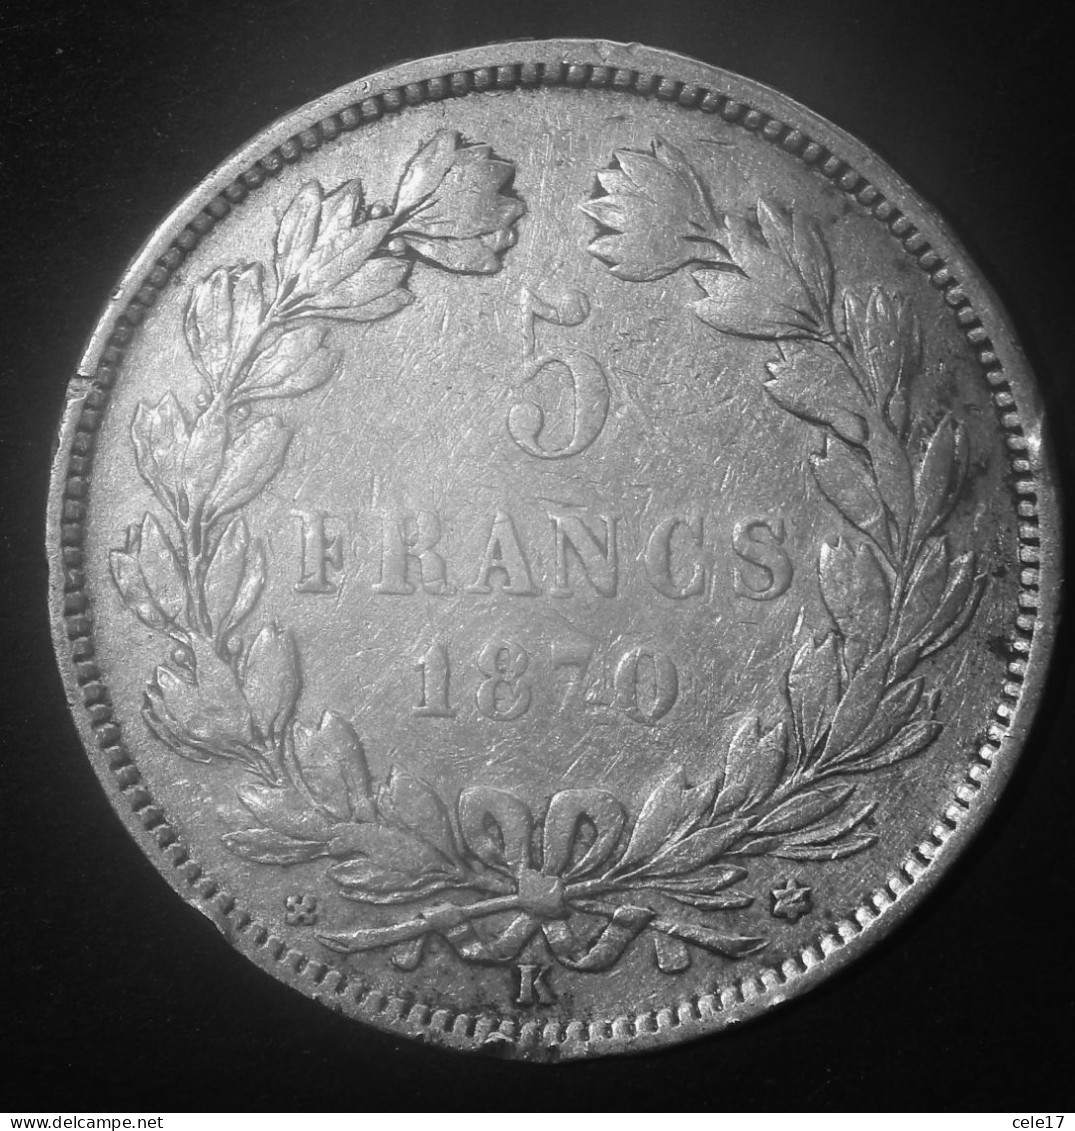 FRANCIA- CERES 5 FRANCHI 1870 ARGENTO- M/star- KM812.2 - 1870-1871 Gouvernement De La Défense Nationale